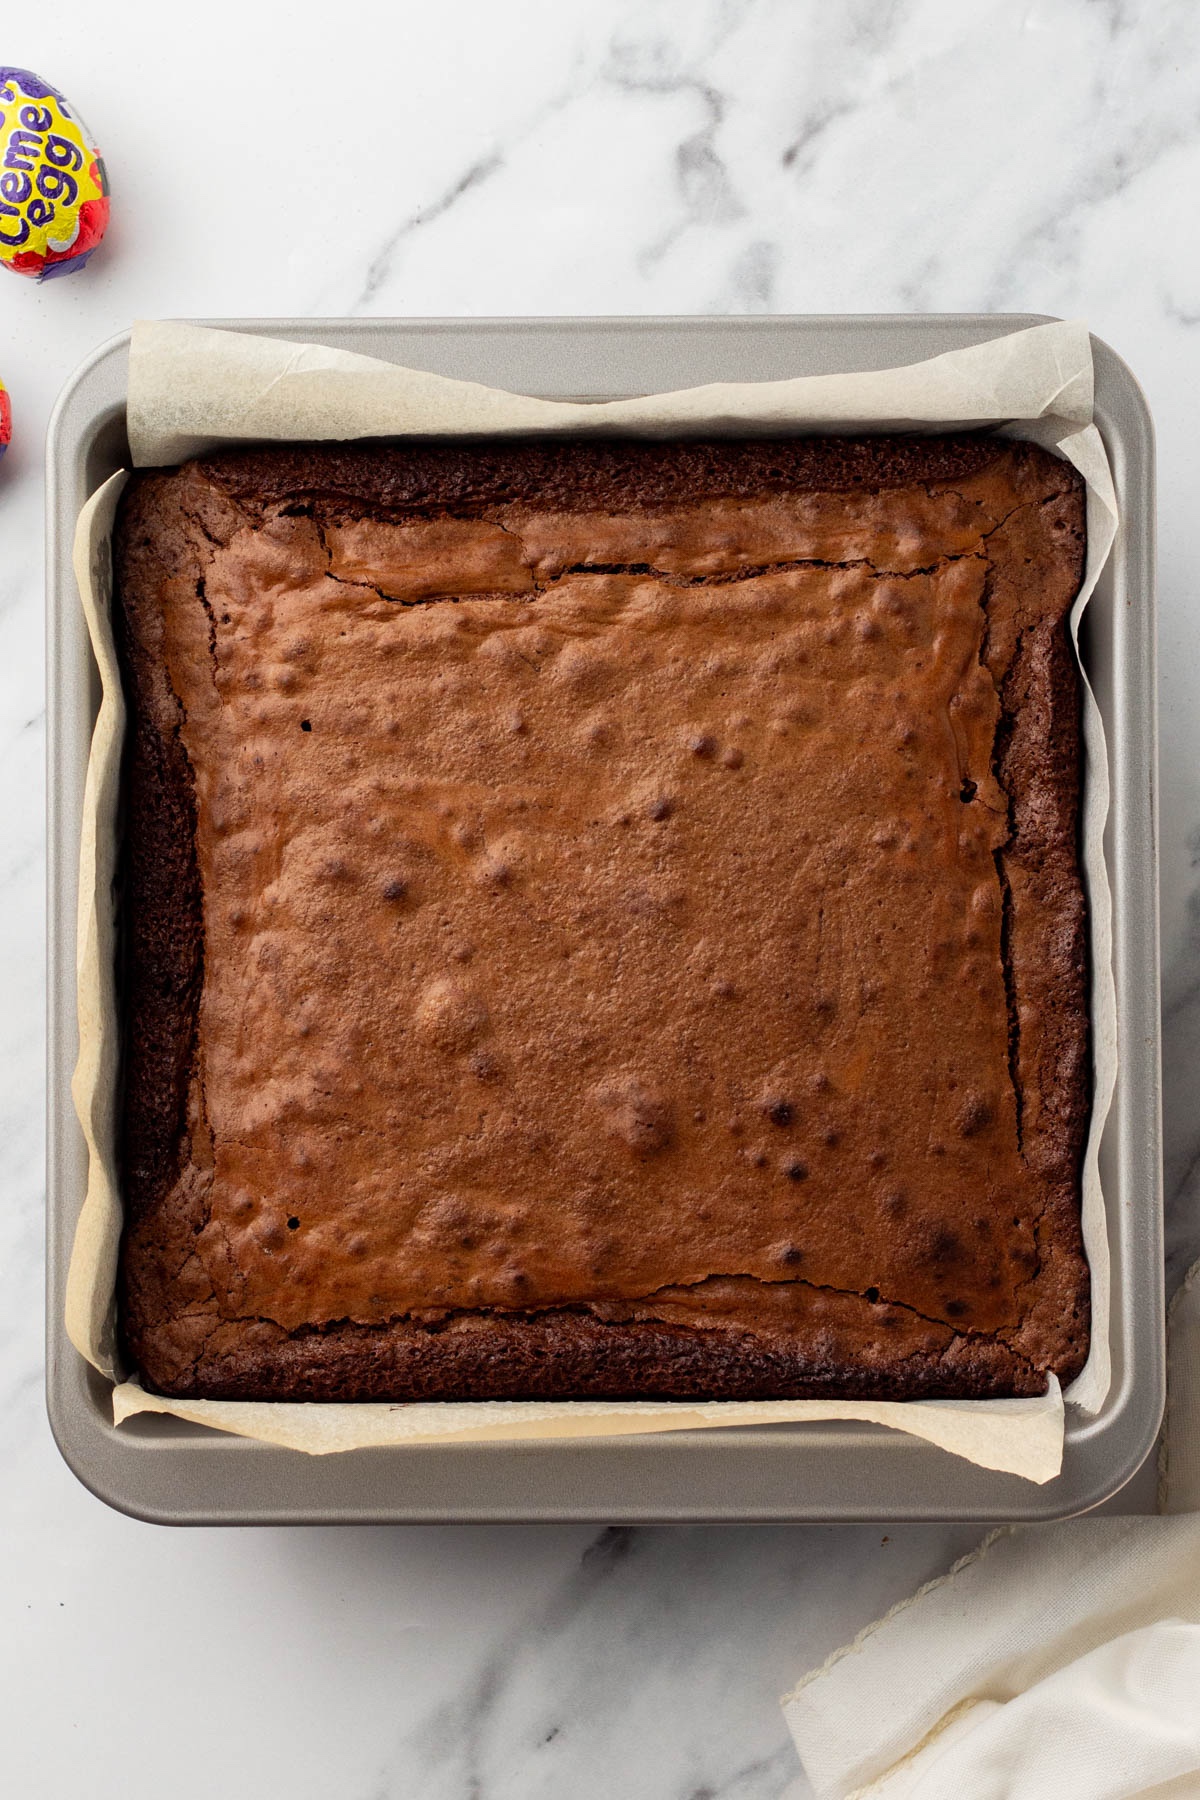 Brownies baked in a pan